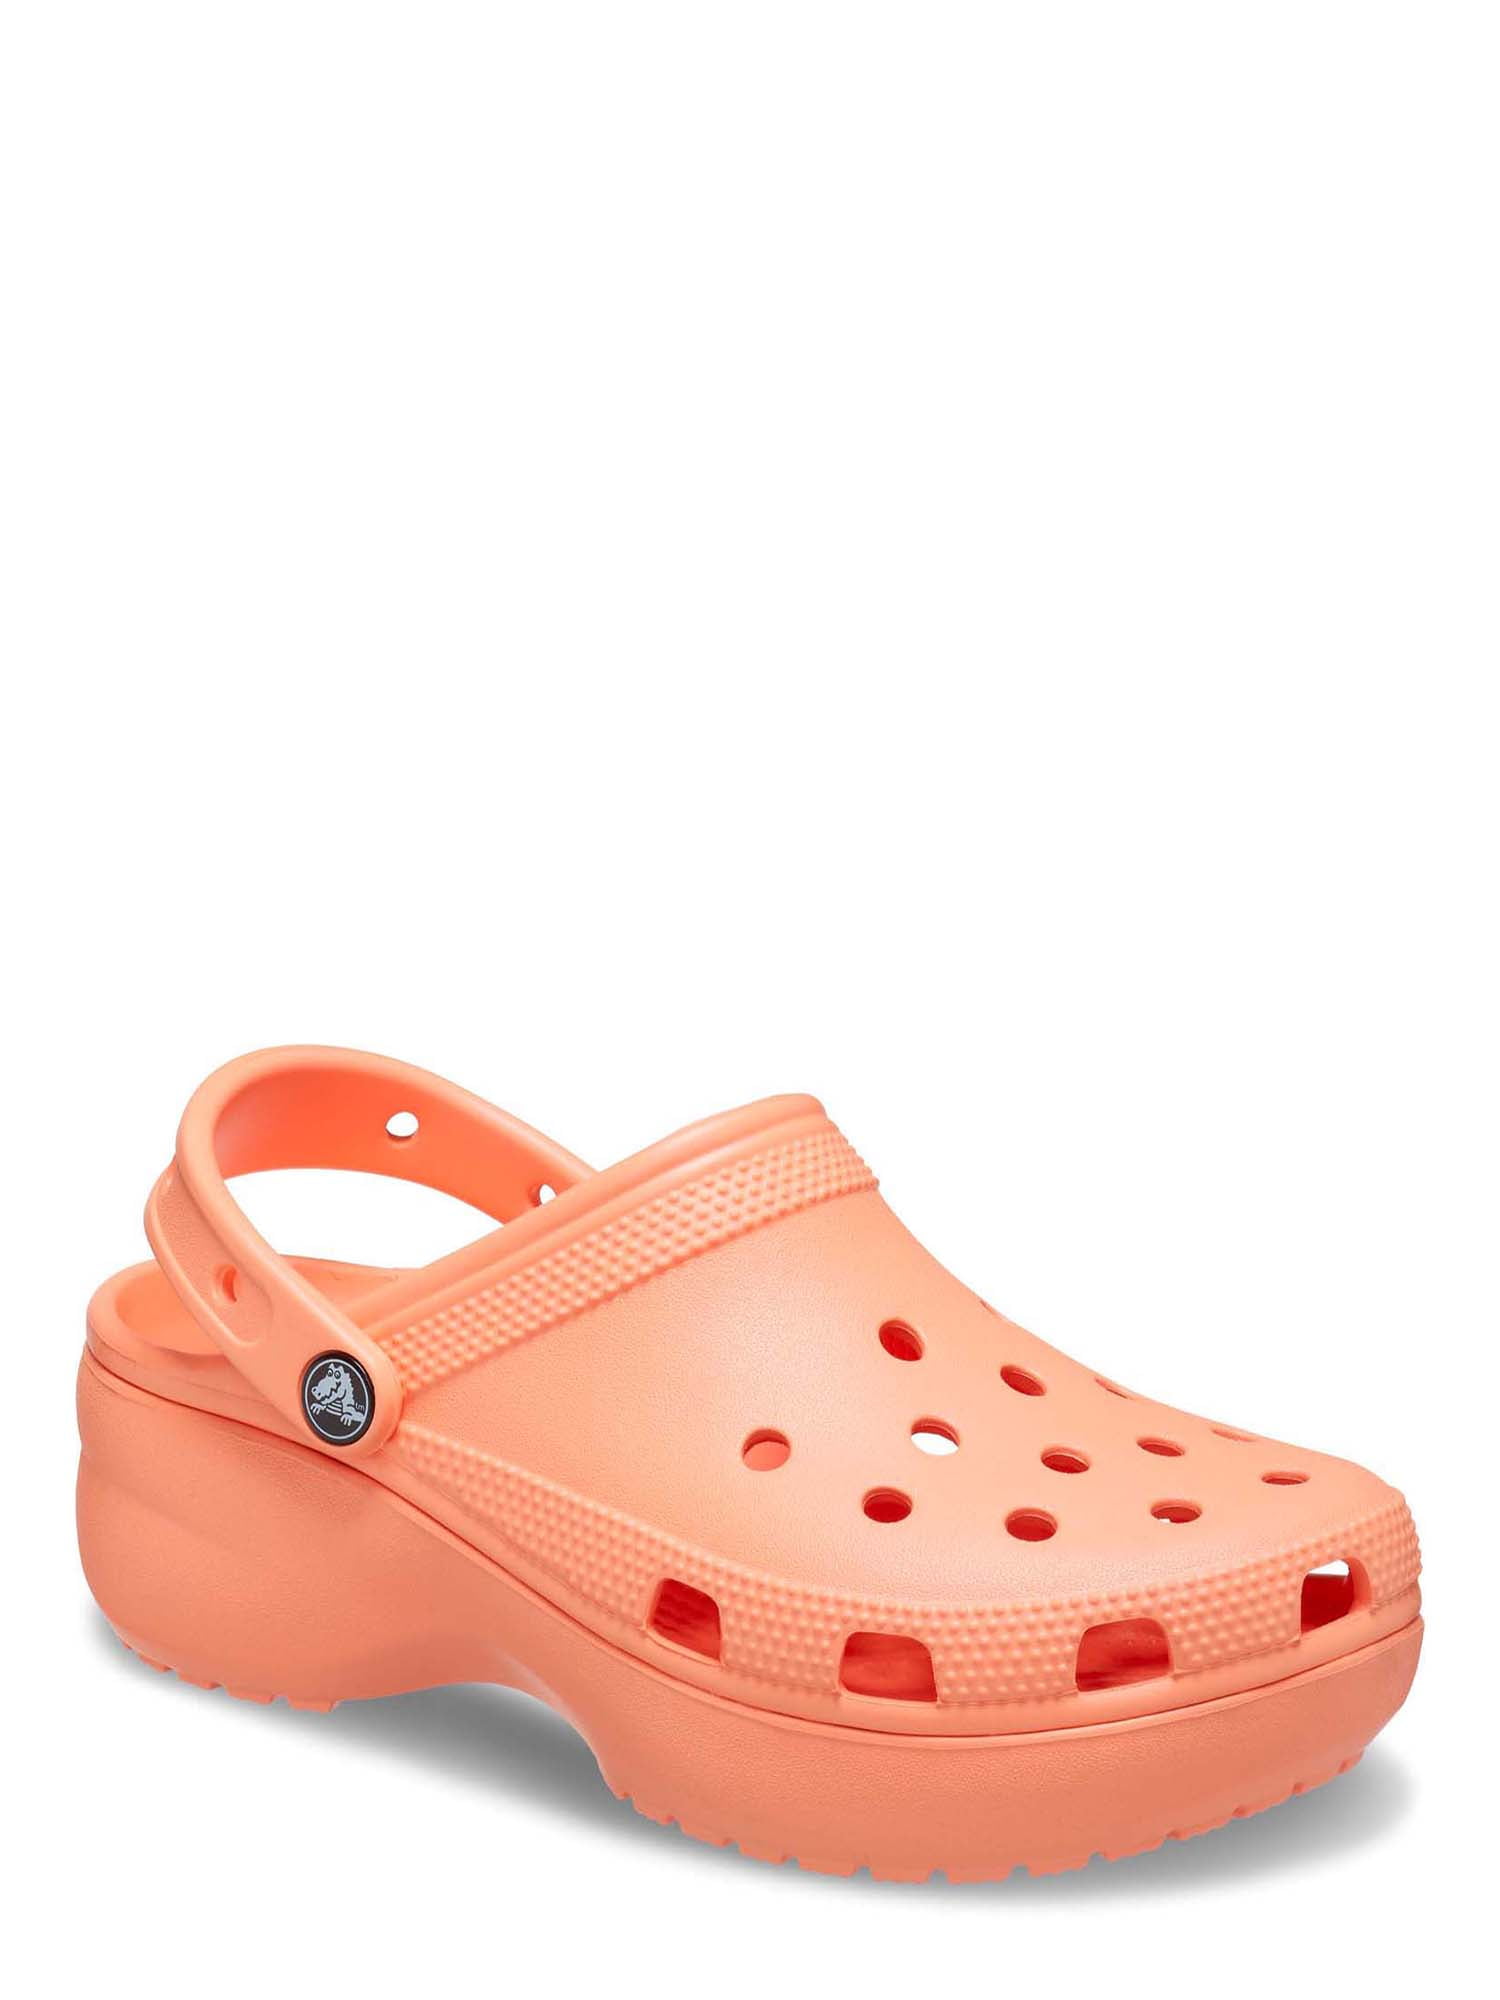 Custom Crocs Orange Bling Size 7 Women's